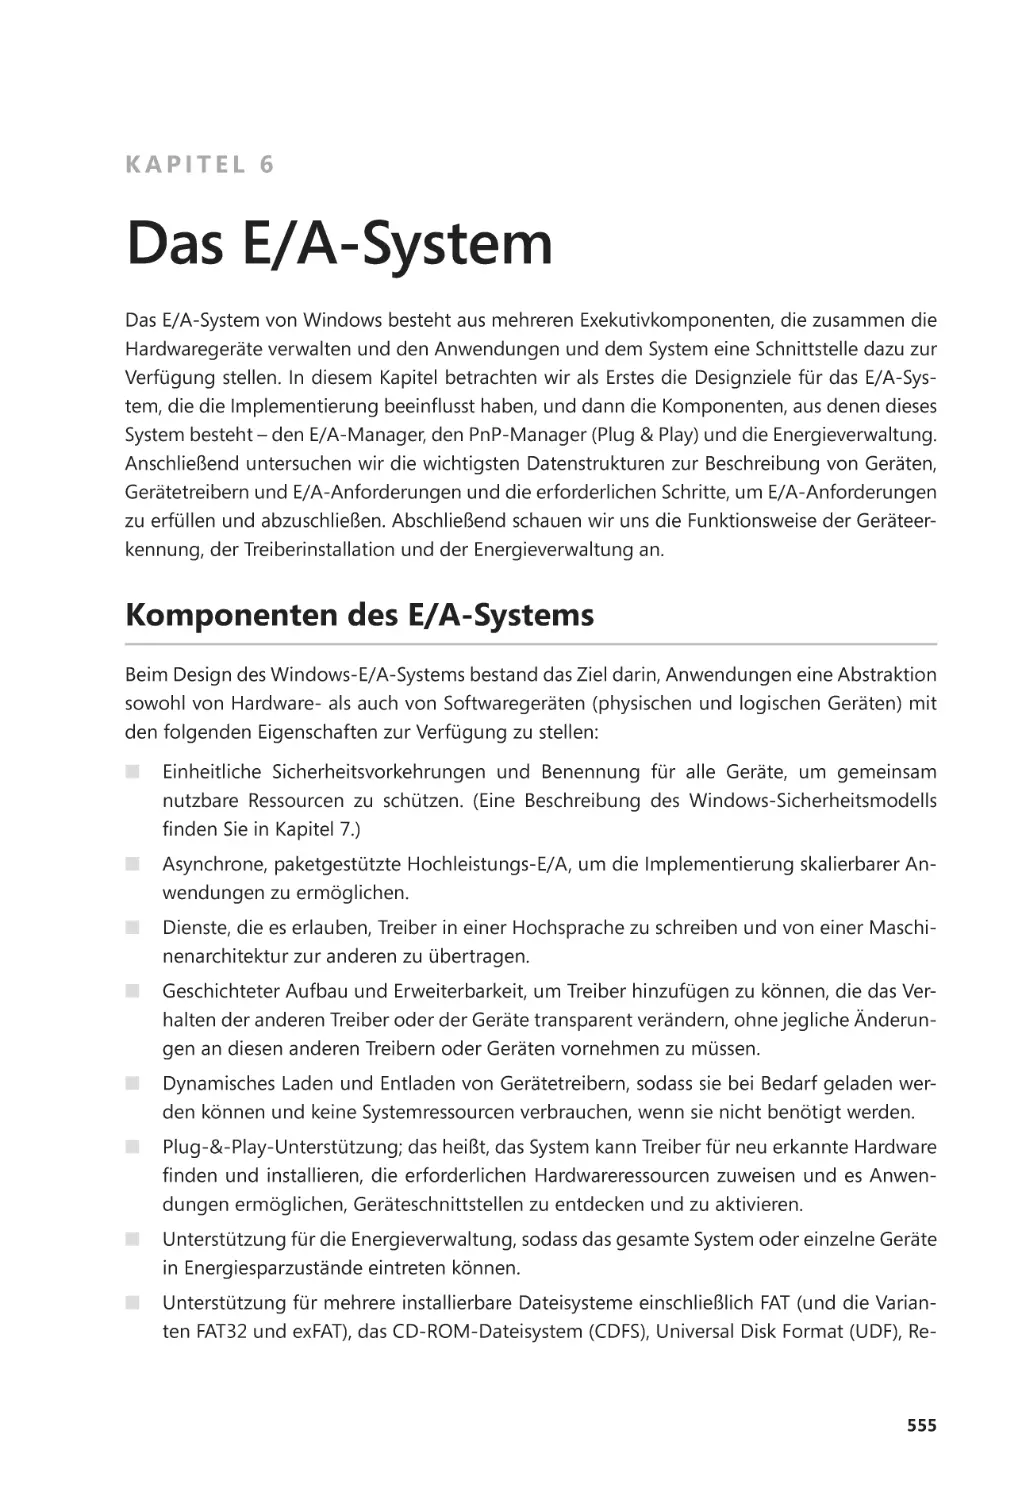 Kapitel 6
Komponenten des E/A-Systems